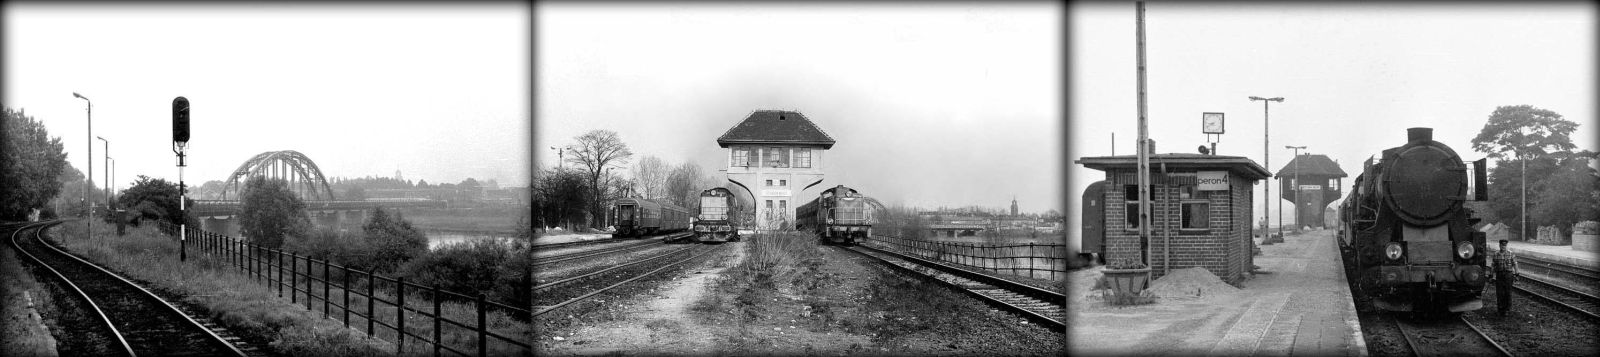 Po lewej wiadukt w kierunku Zbąszynka w dniu 22.09.1987. W środku widok peronów nadwarciańskich od strony zachodniej, dworca towarowego w 1991 roku. Po prawej Ty2 z osobowym do Rudnicy (Kostrzyna/O).